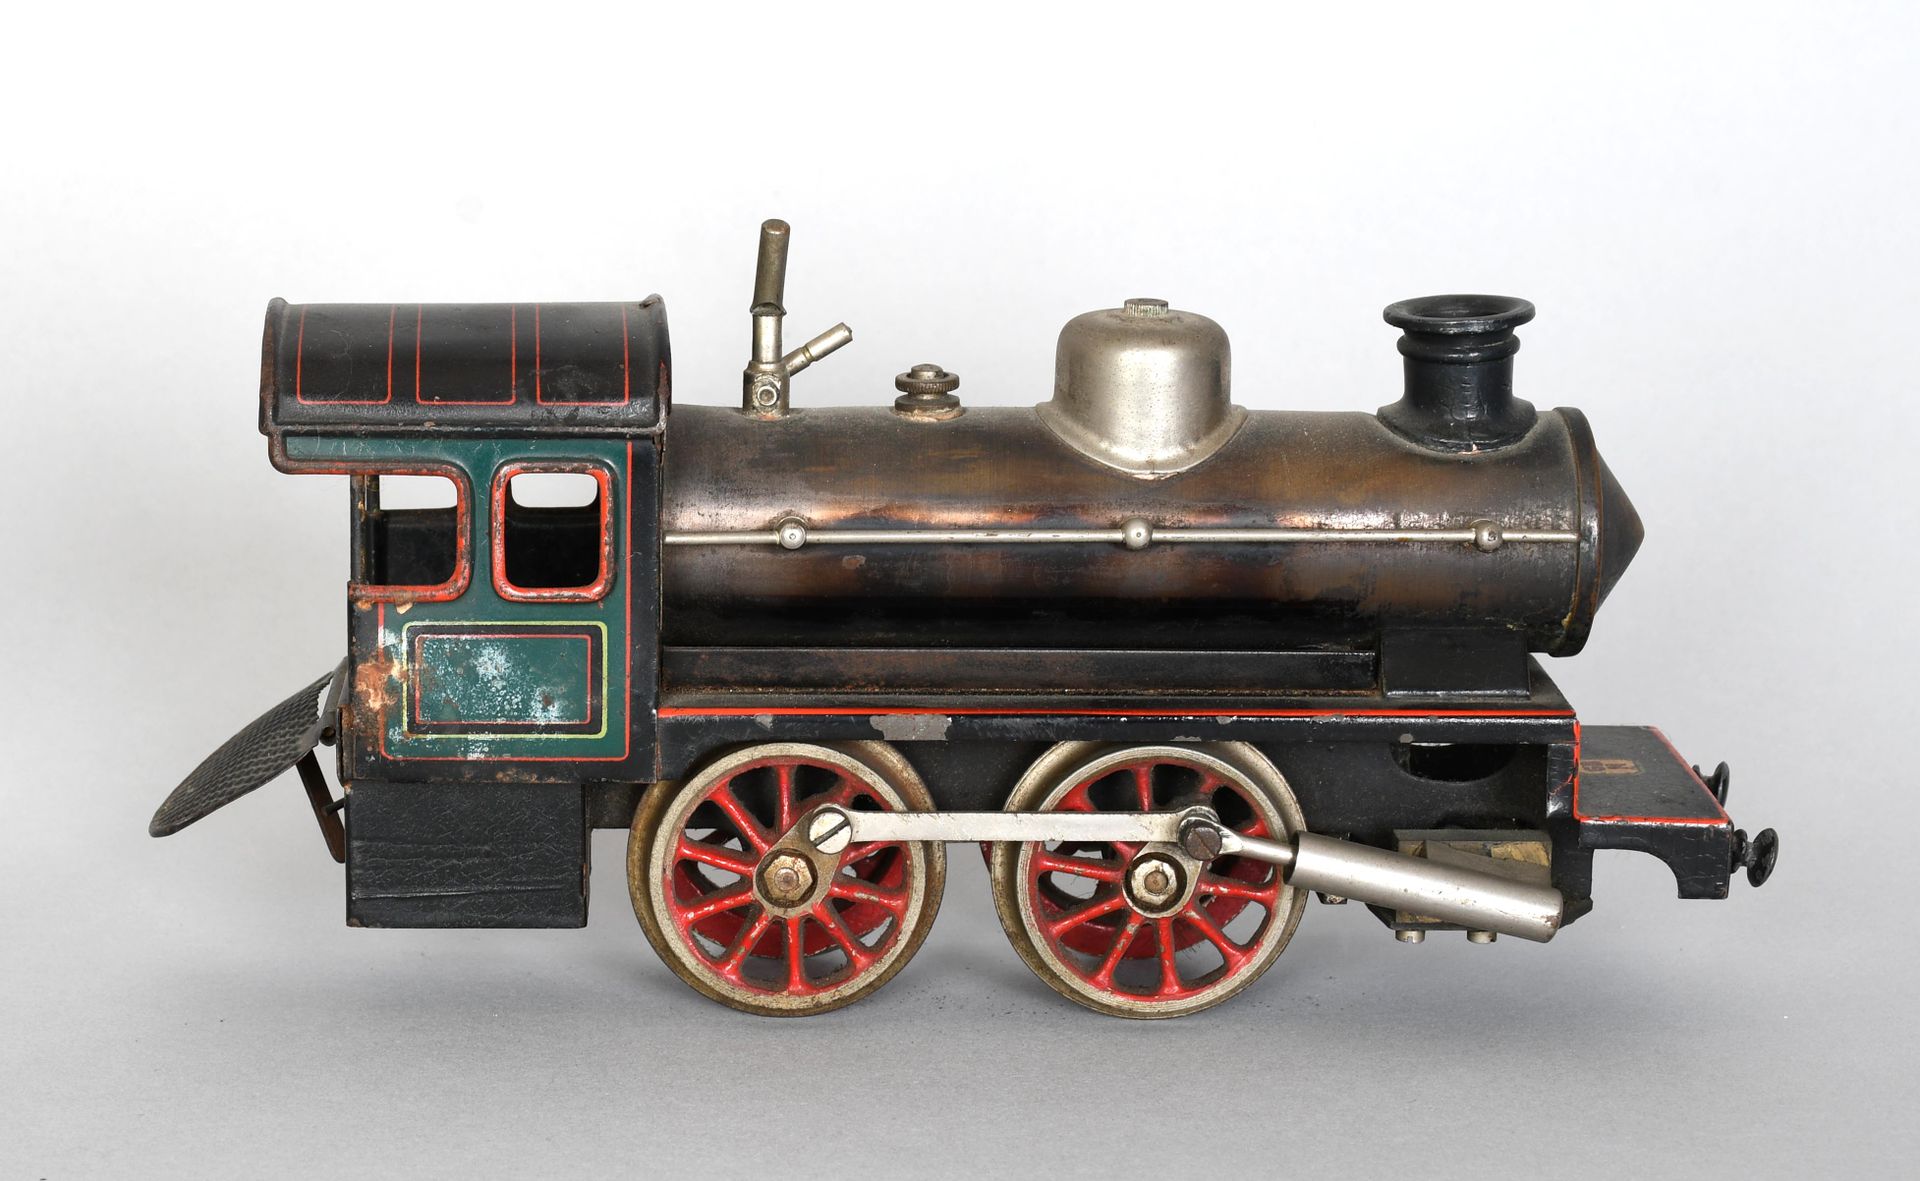 Null Bing / Allemagne, 1920

Locomotive à vapeur vive. Longueur : 23 cm.